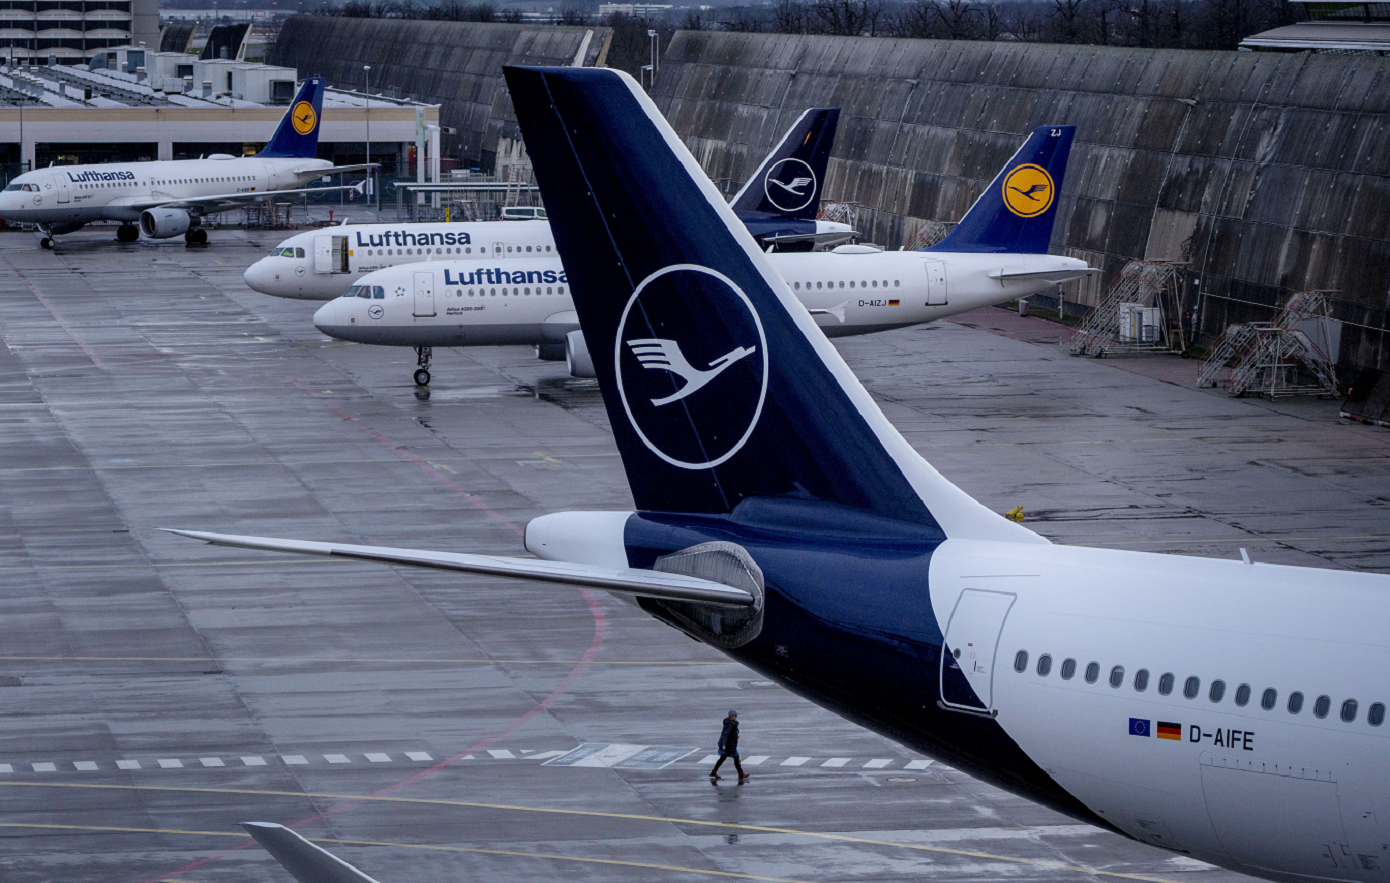 Τριήμερη απεργία ξεκινά το προσωπικό εδάφους της Lufthansa